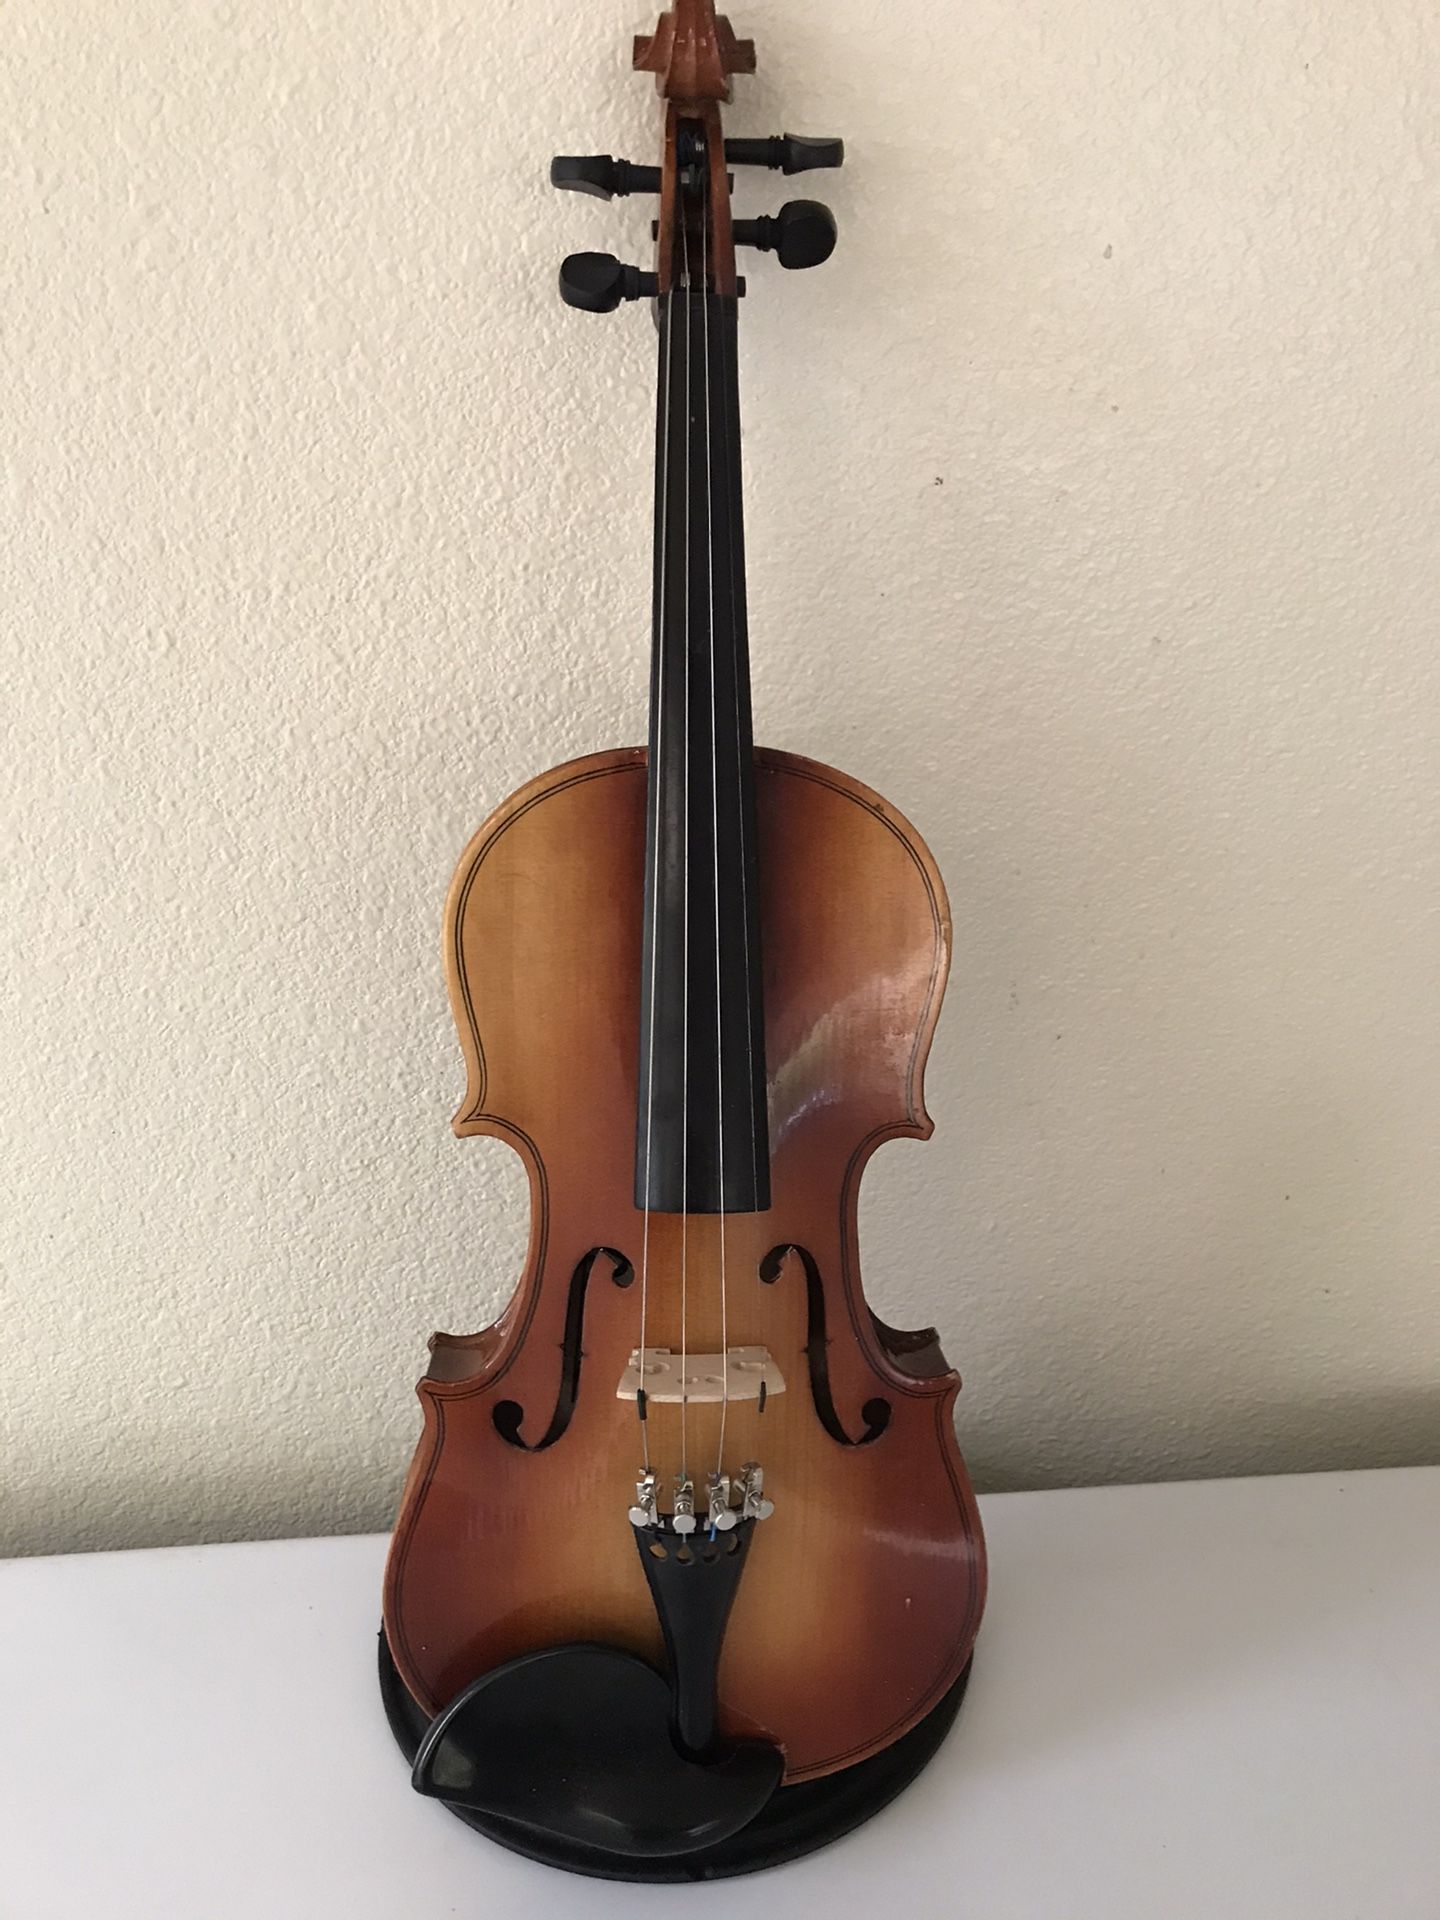 1/2 violin (or 12” viola)